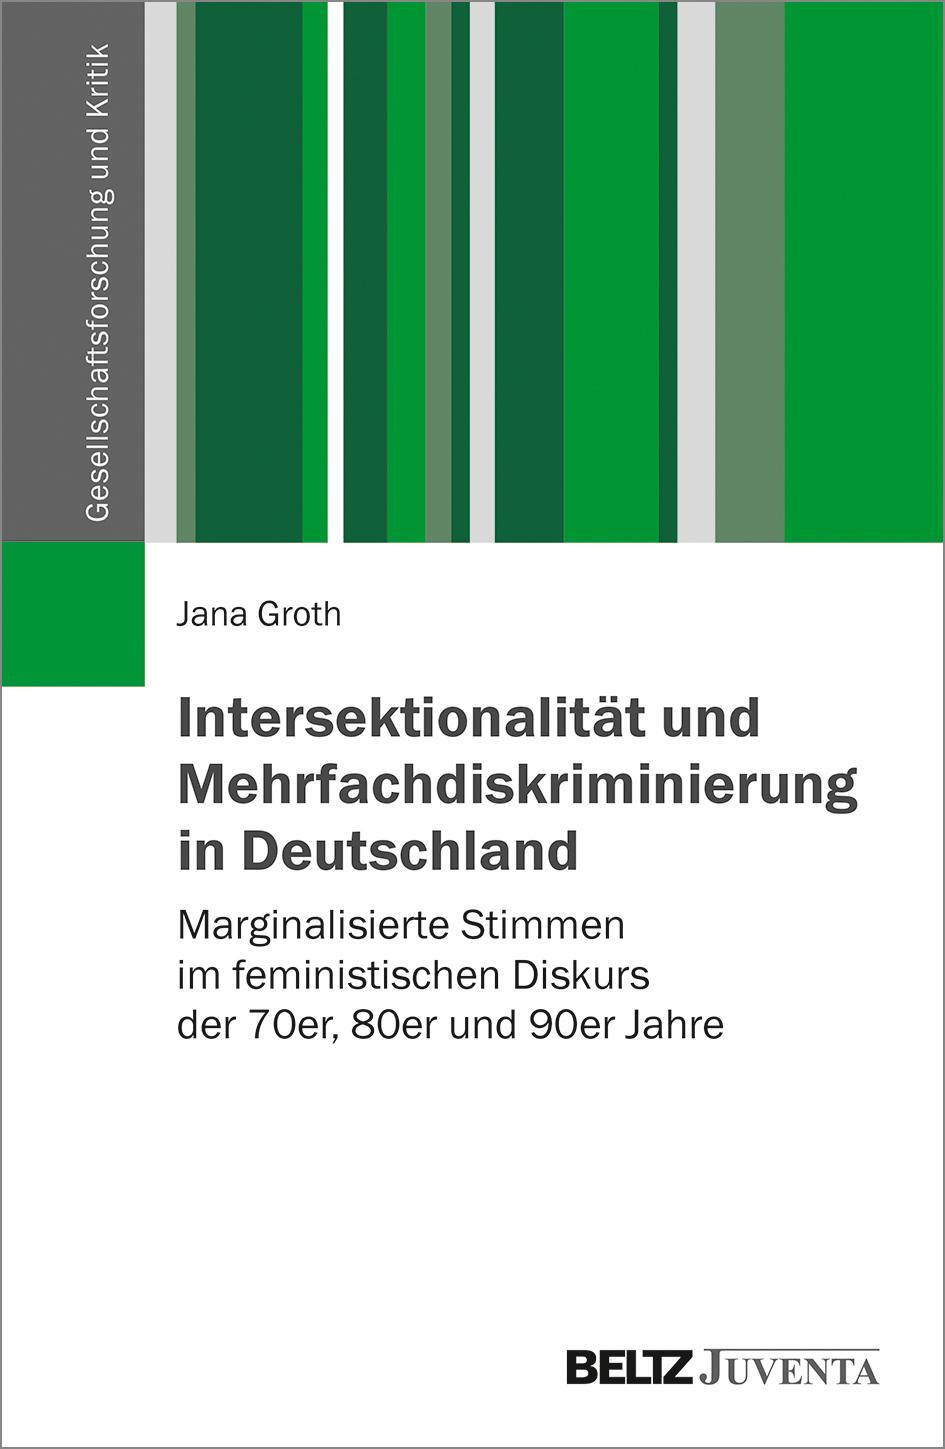 Intersektionalität und Mehrfachdiskriminierung in Deutschland - Groth, Jana